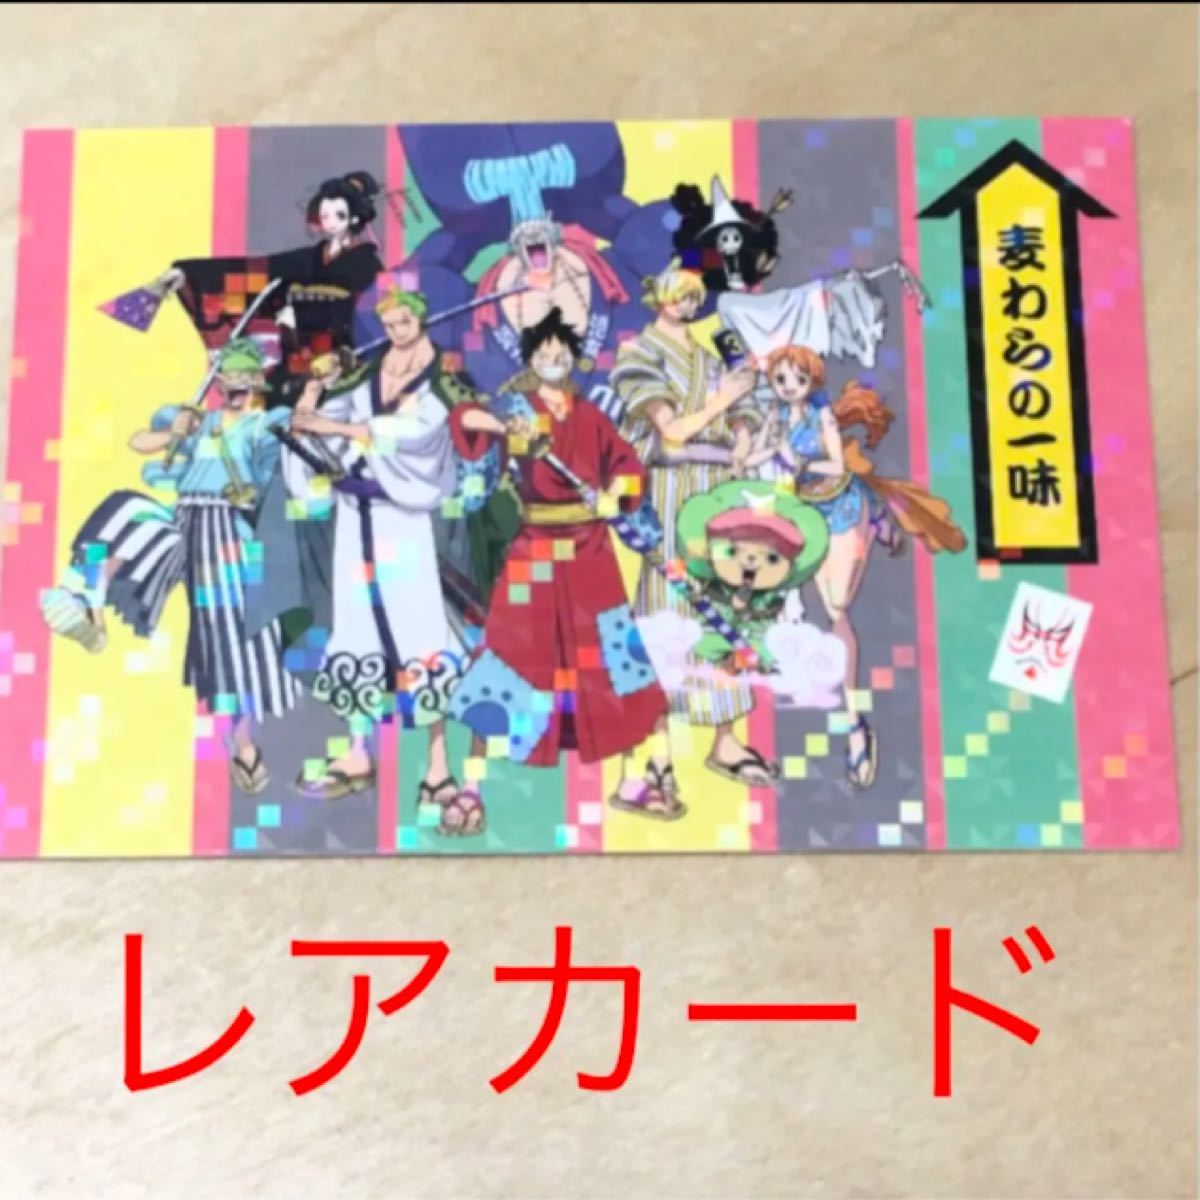 Paypayフリマ One Piece 永谷園 東海道五十三次 お茶漬け ワンピースのレアカード